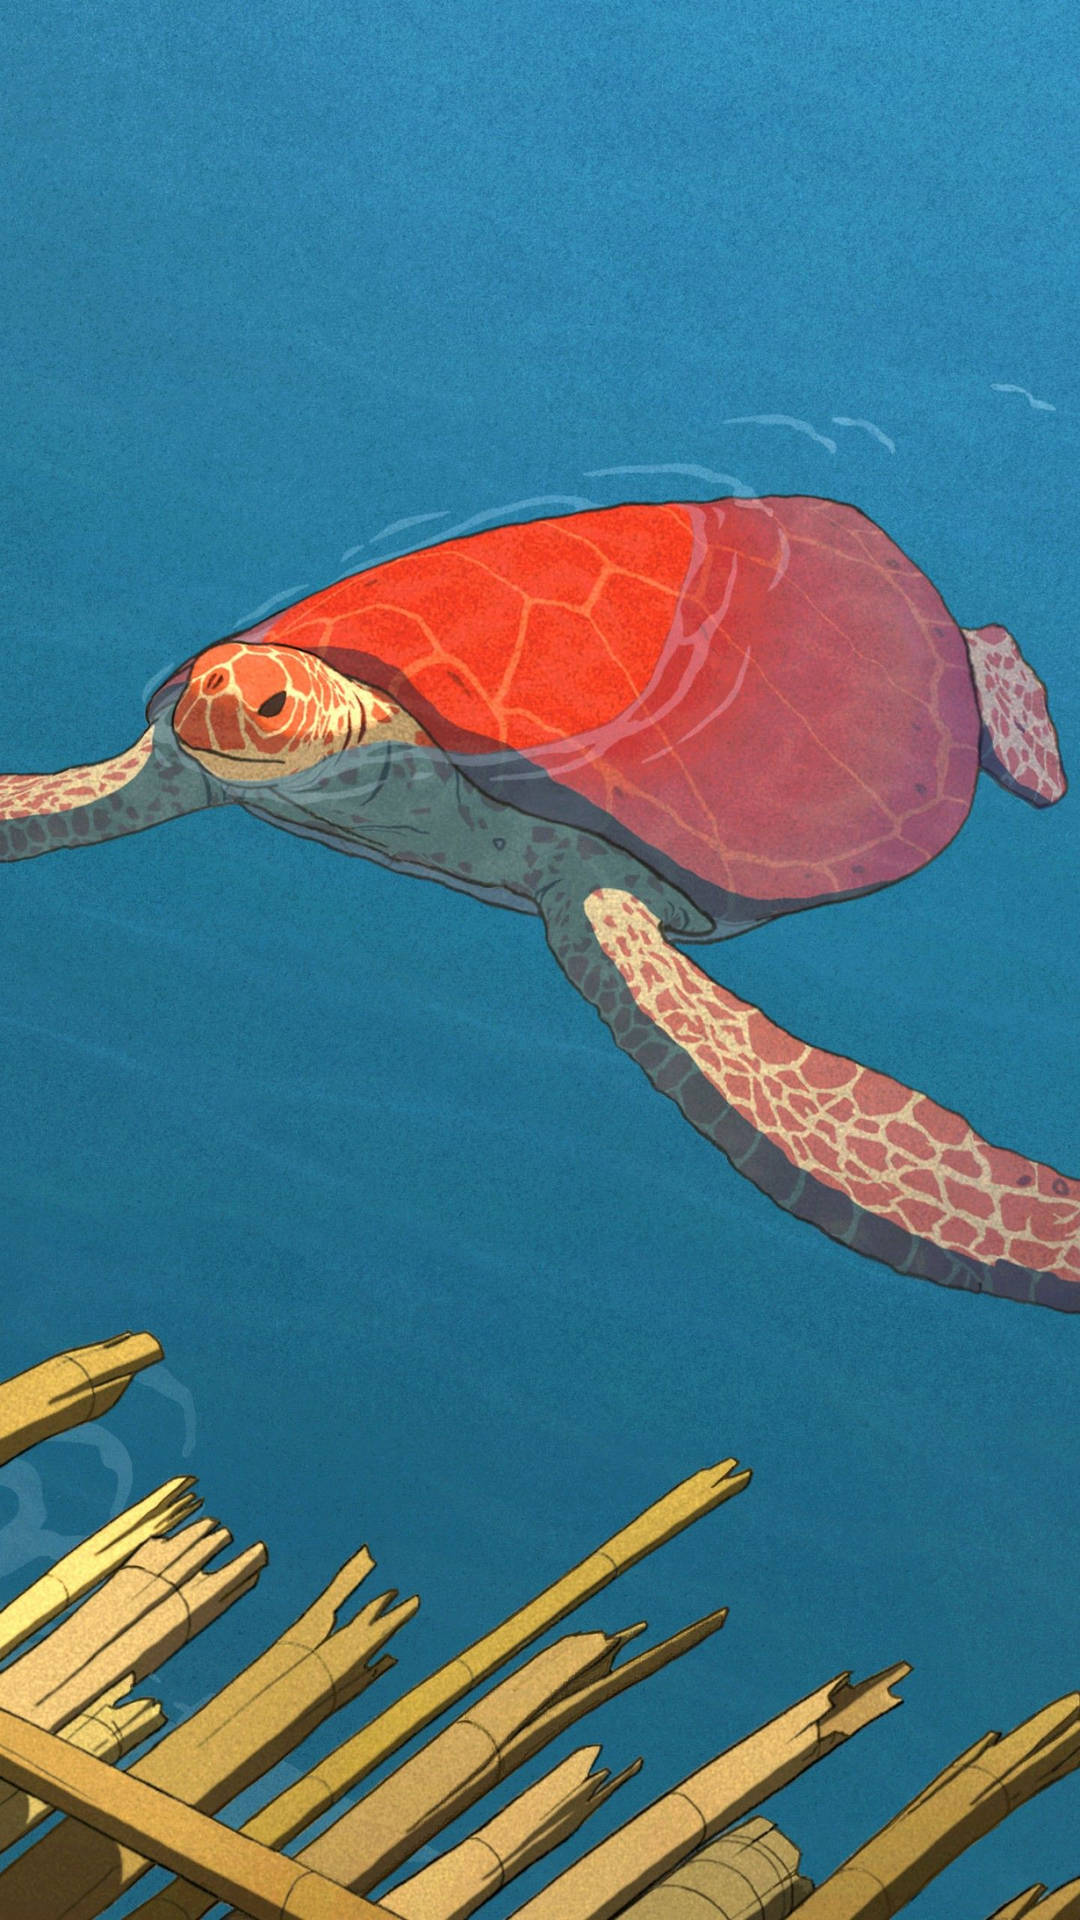 Eineschildkröte, Die Im Meer In Der Nähe Eines Hölzernen Piers Schwimmt. Wallpaper